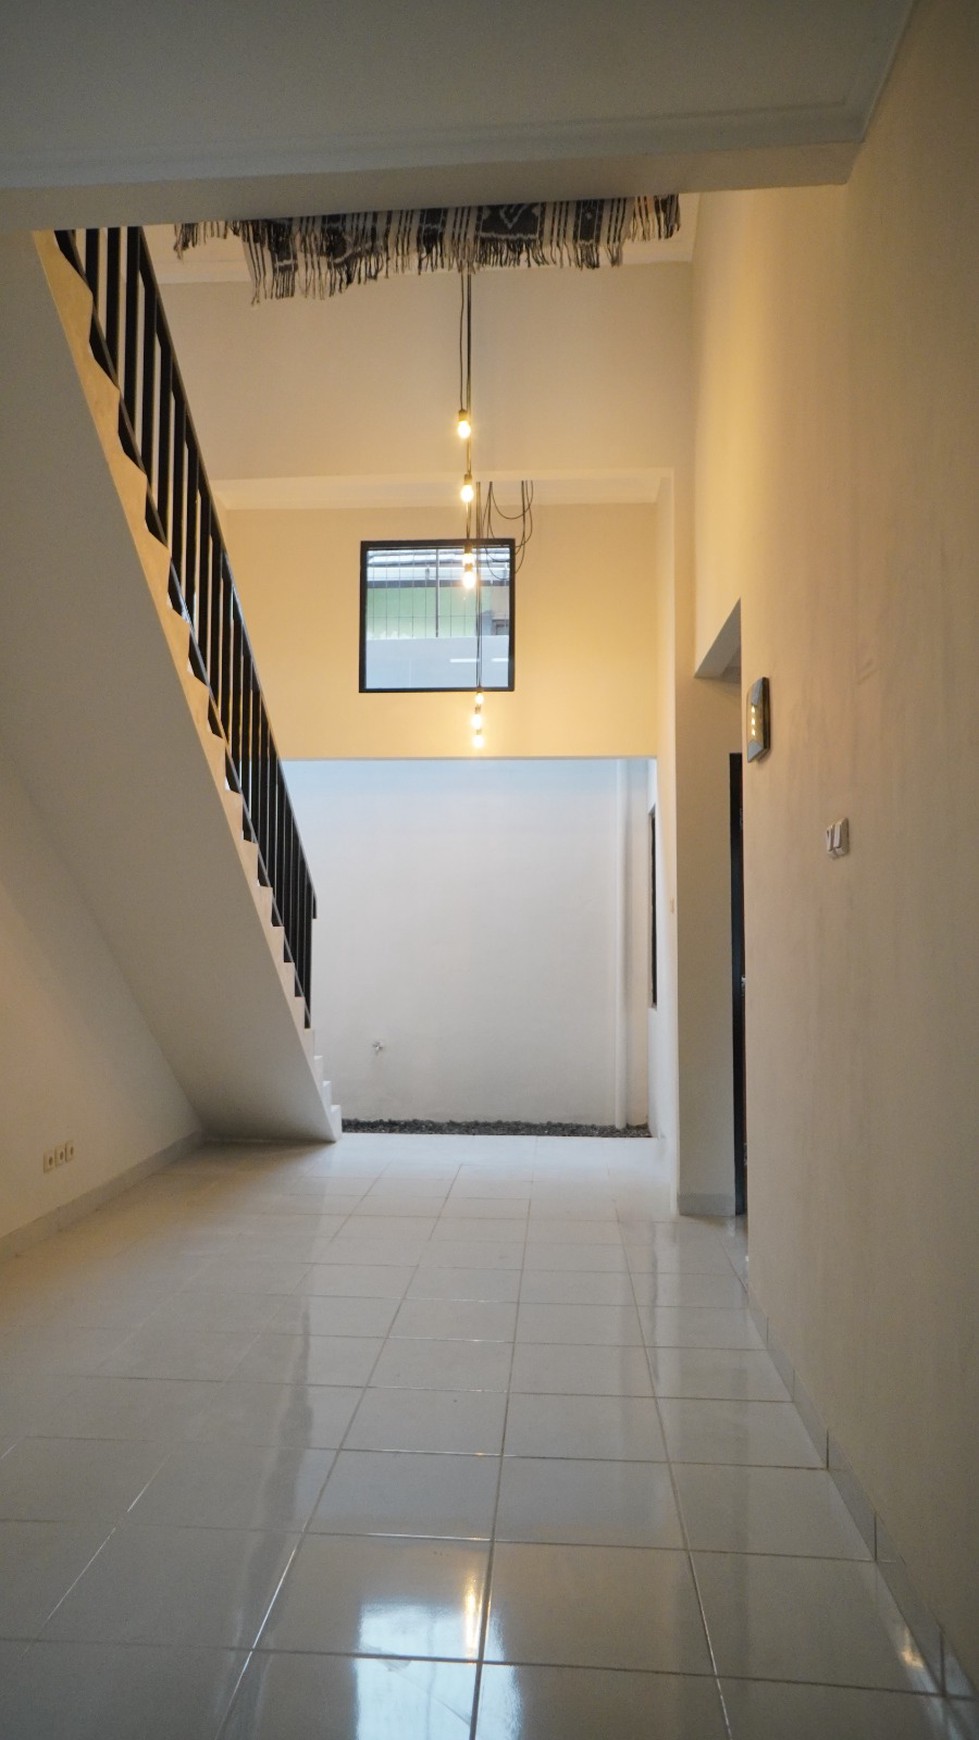 Rumah Minimalis renovasi Bagus .,Siap huni, Akses mudah di Bintaro Sektor 9